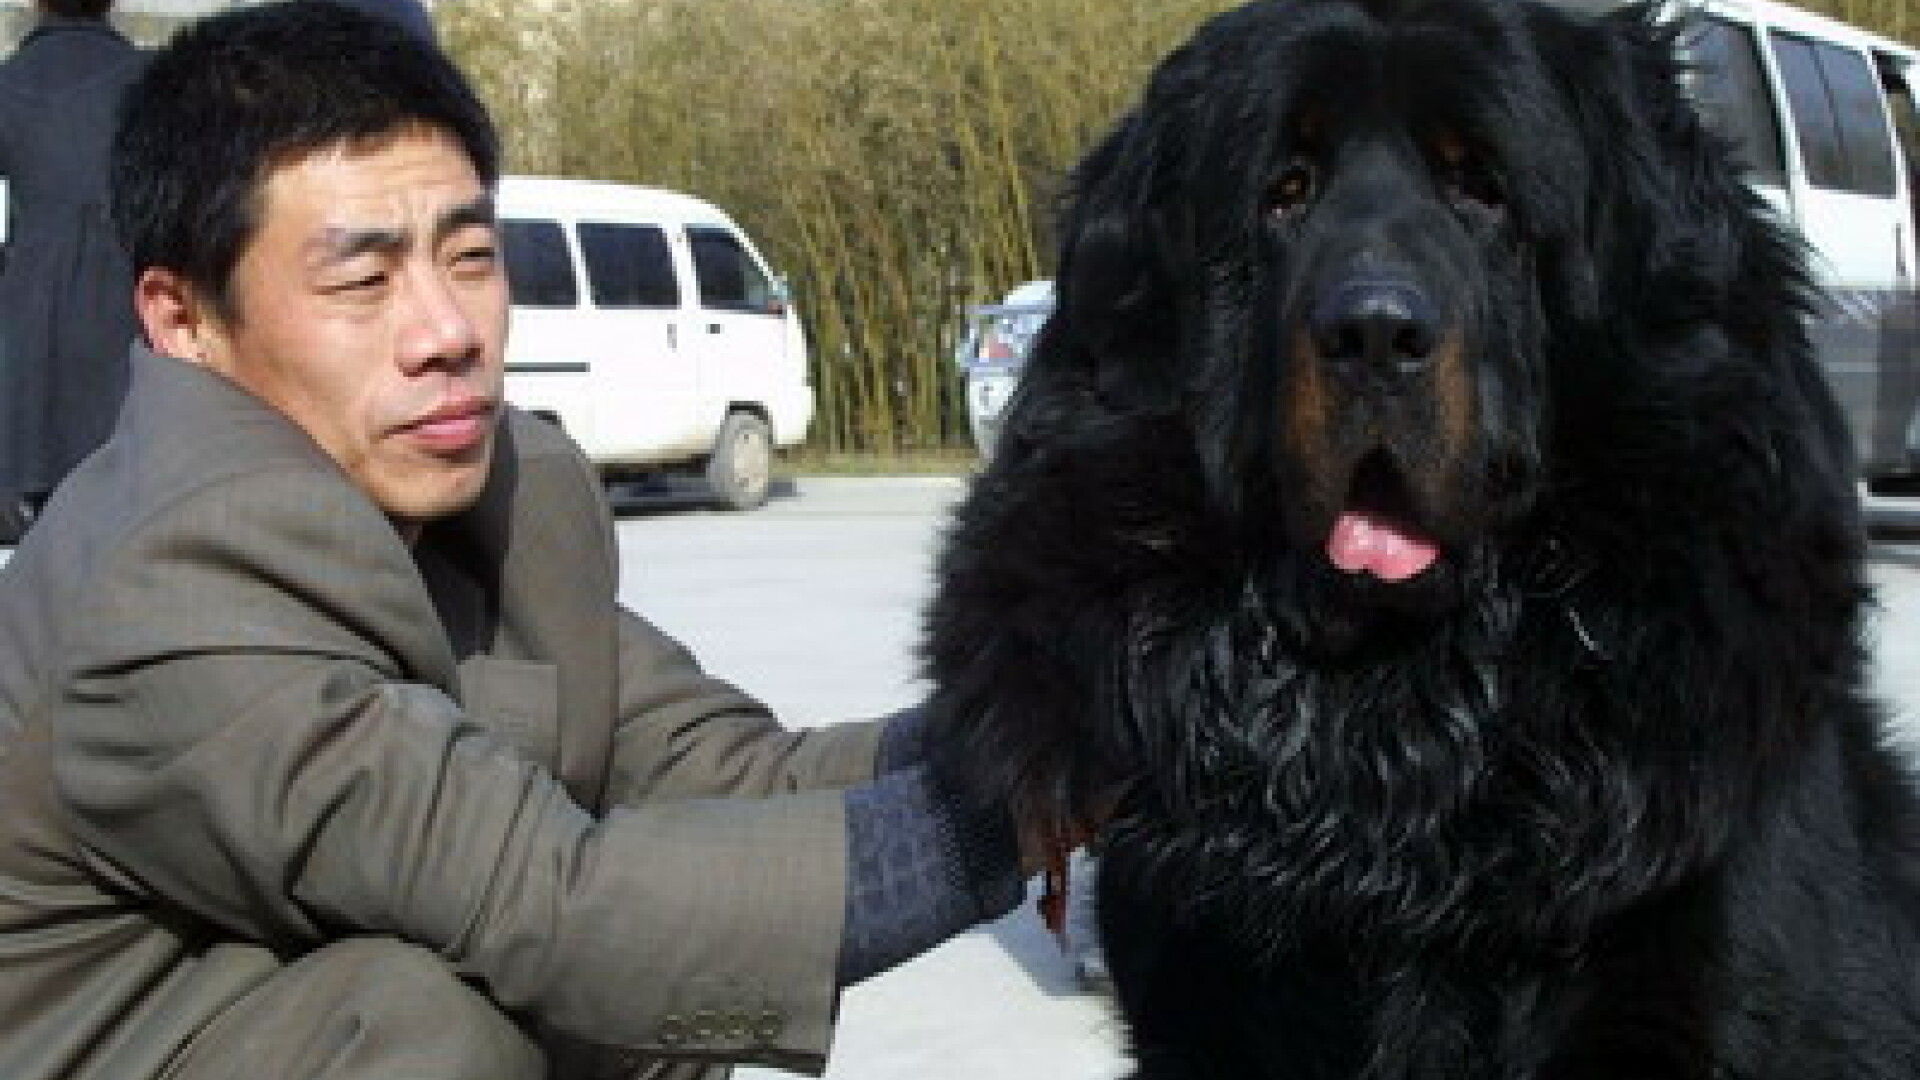 Mastiff-ul tibetan a devenit o afacere pentru chinezi